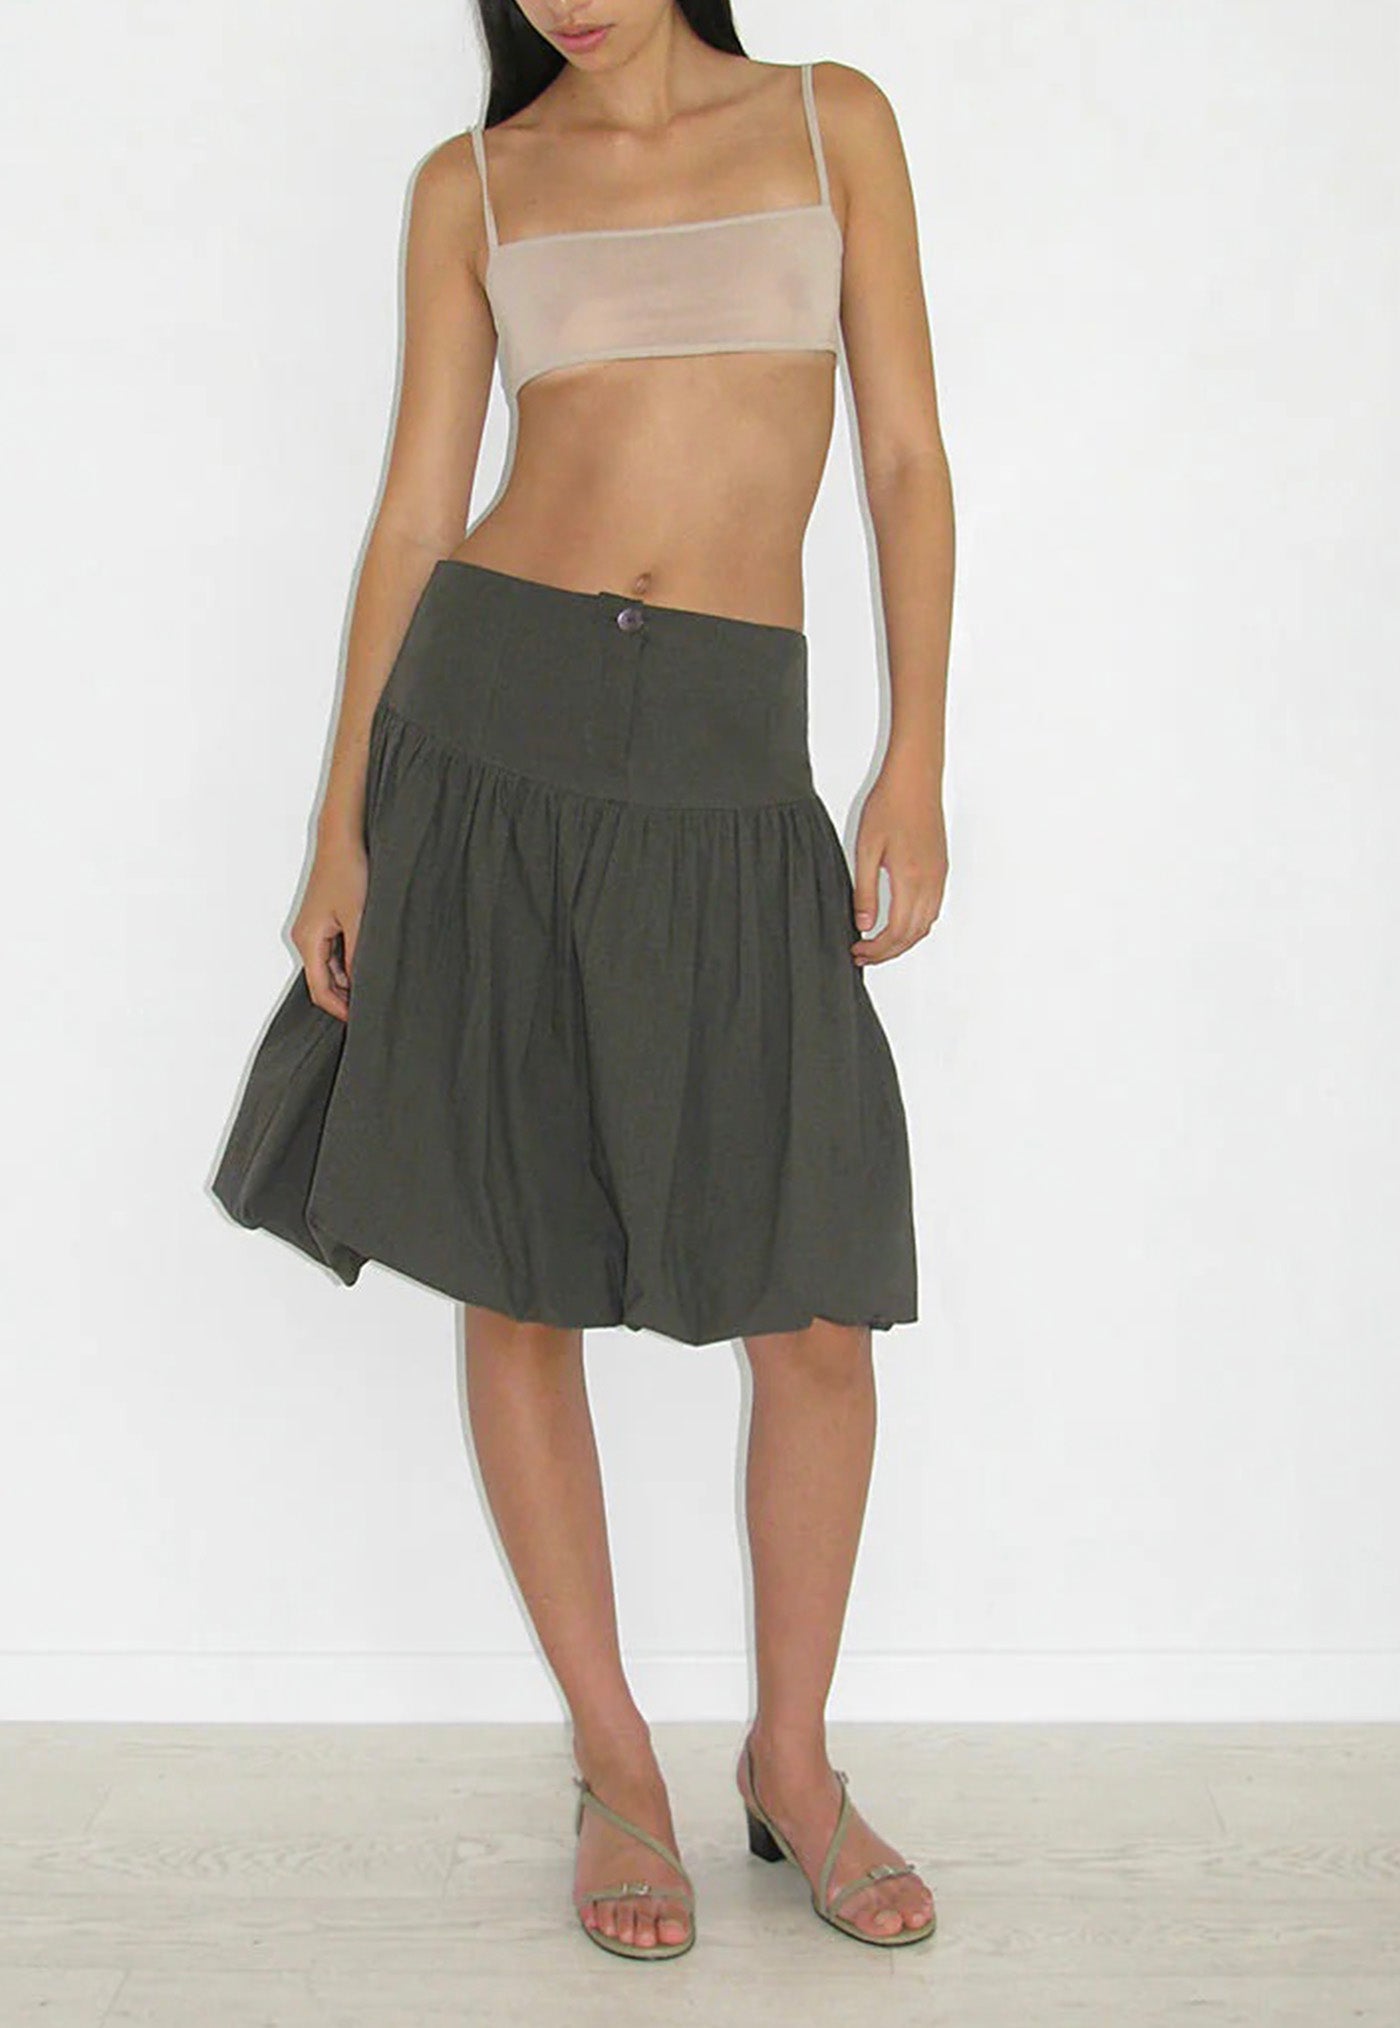 Globo Skirt - Green sold by Angel Divine